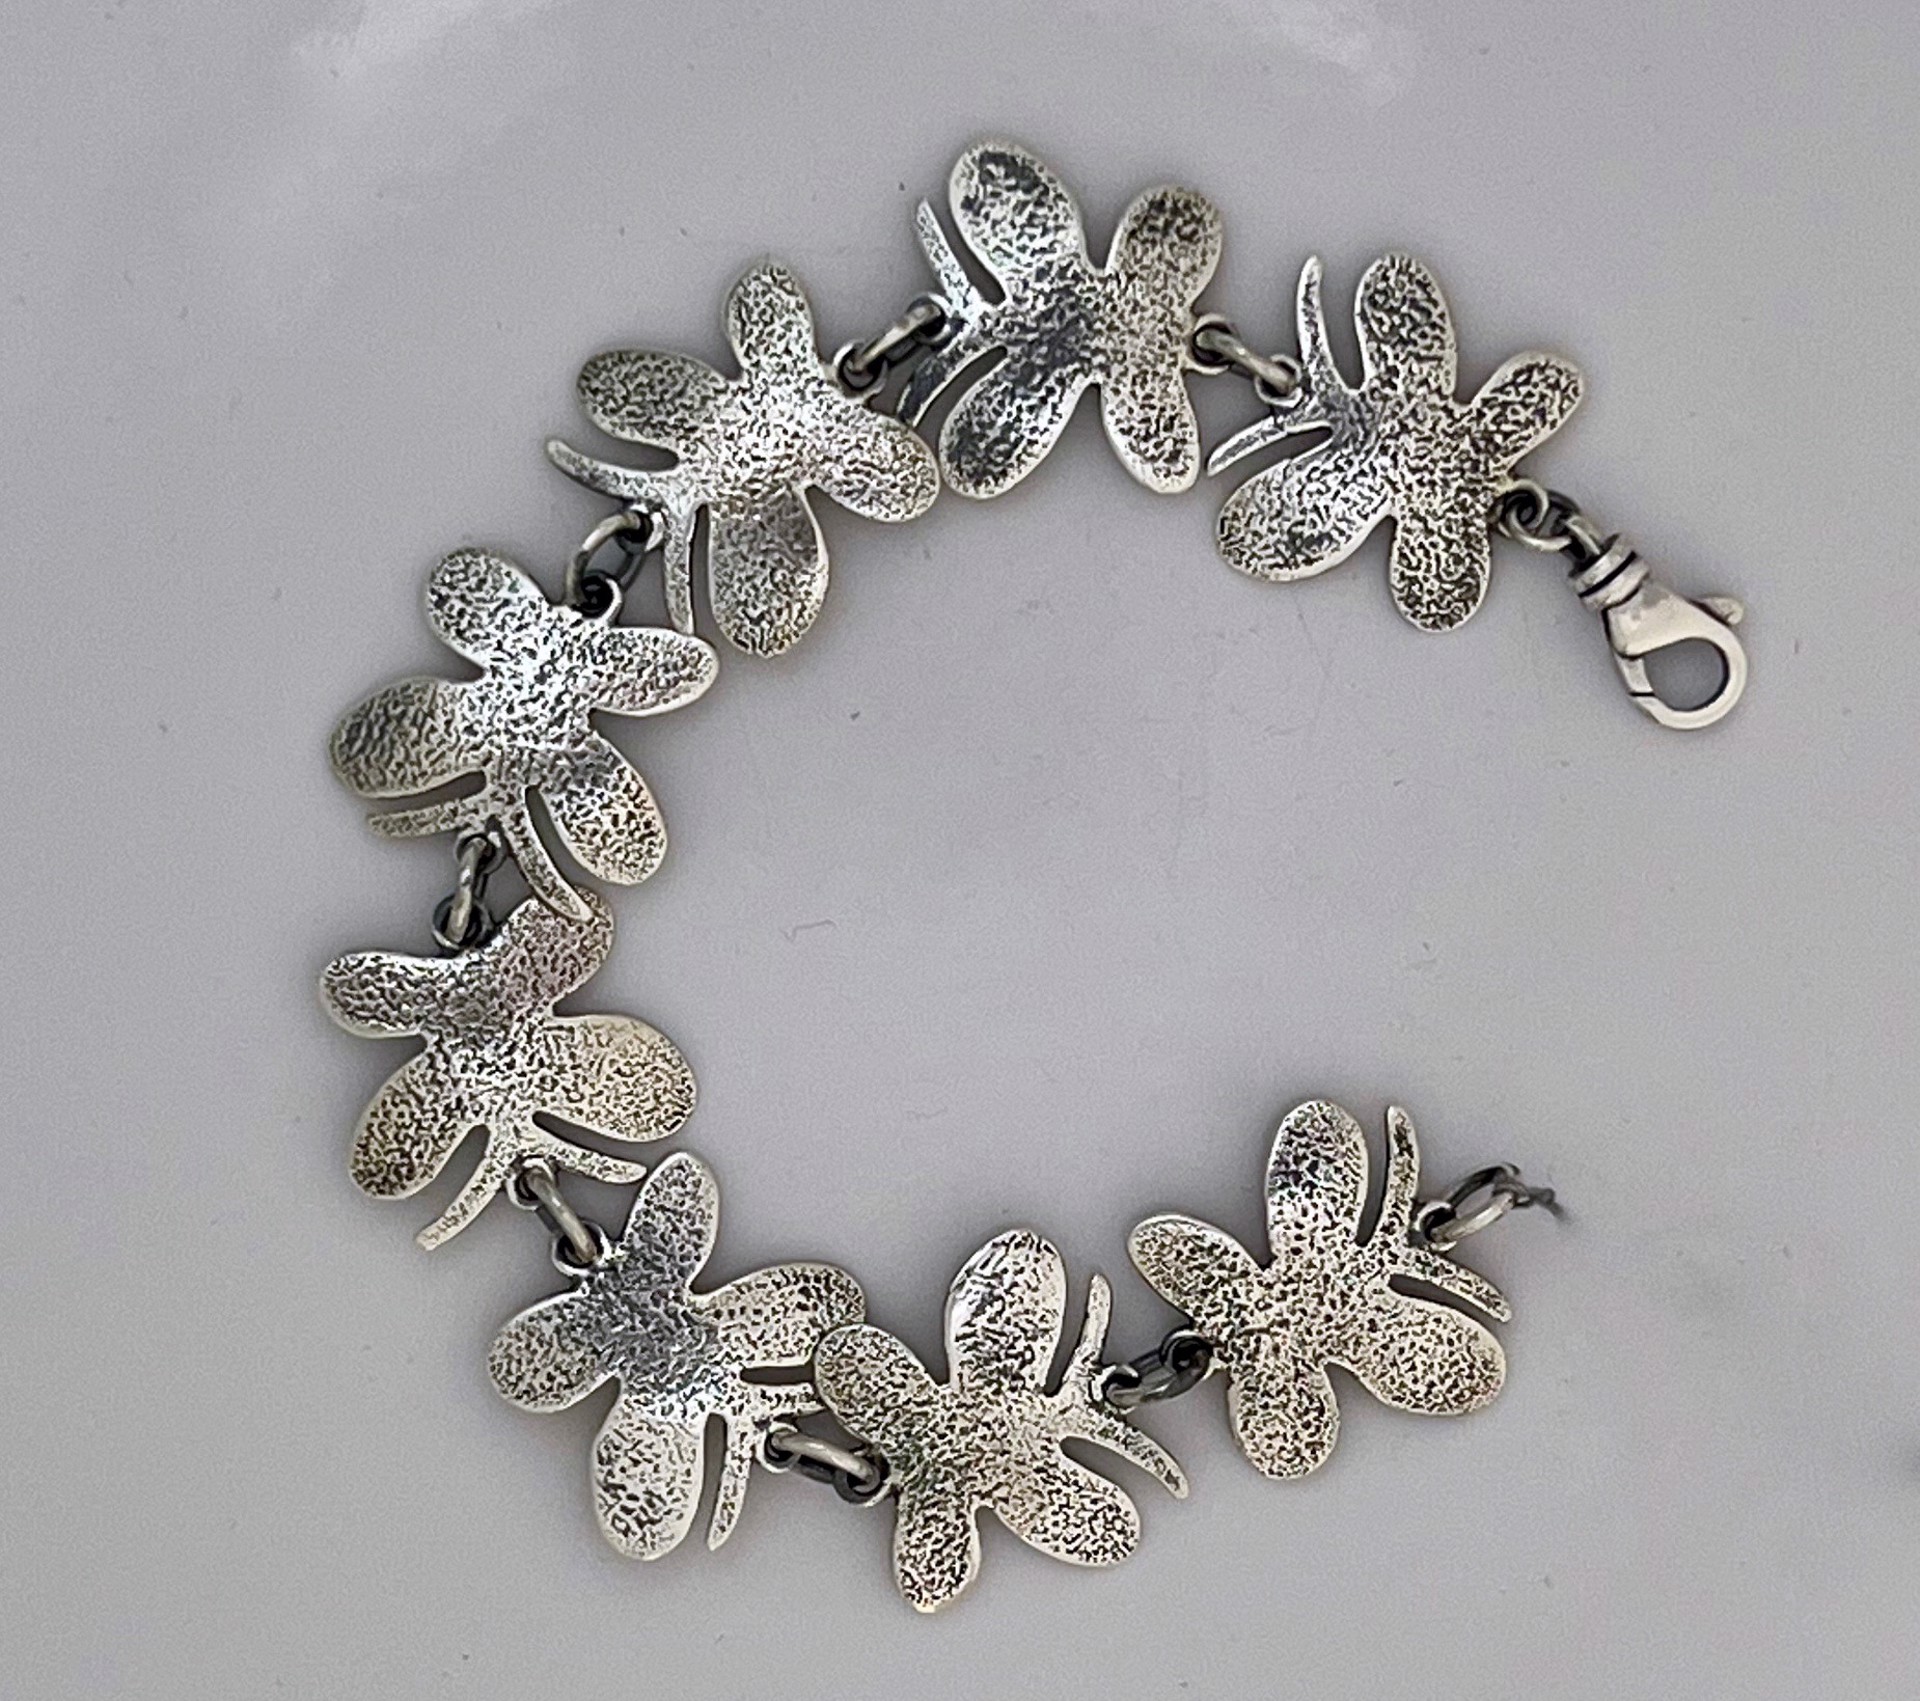 Butterfly link bracelet by Melanie A. Yazzie